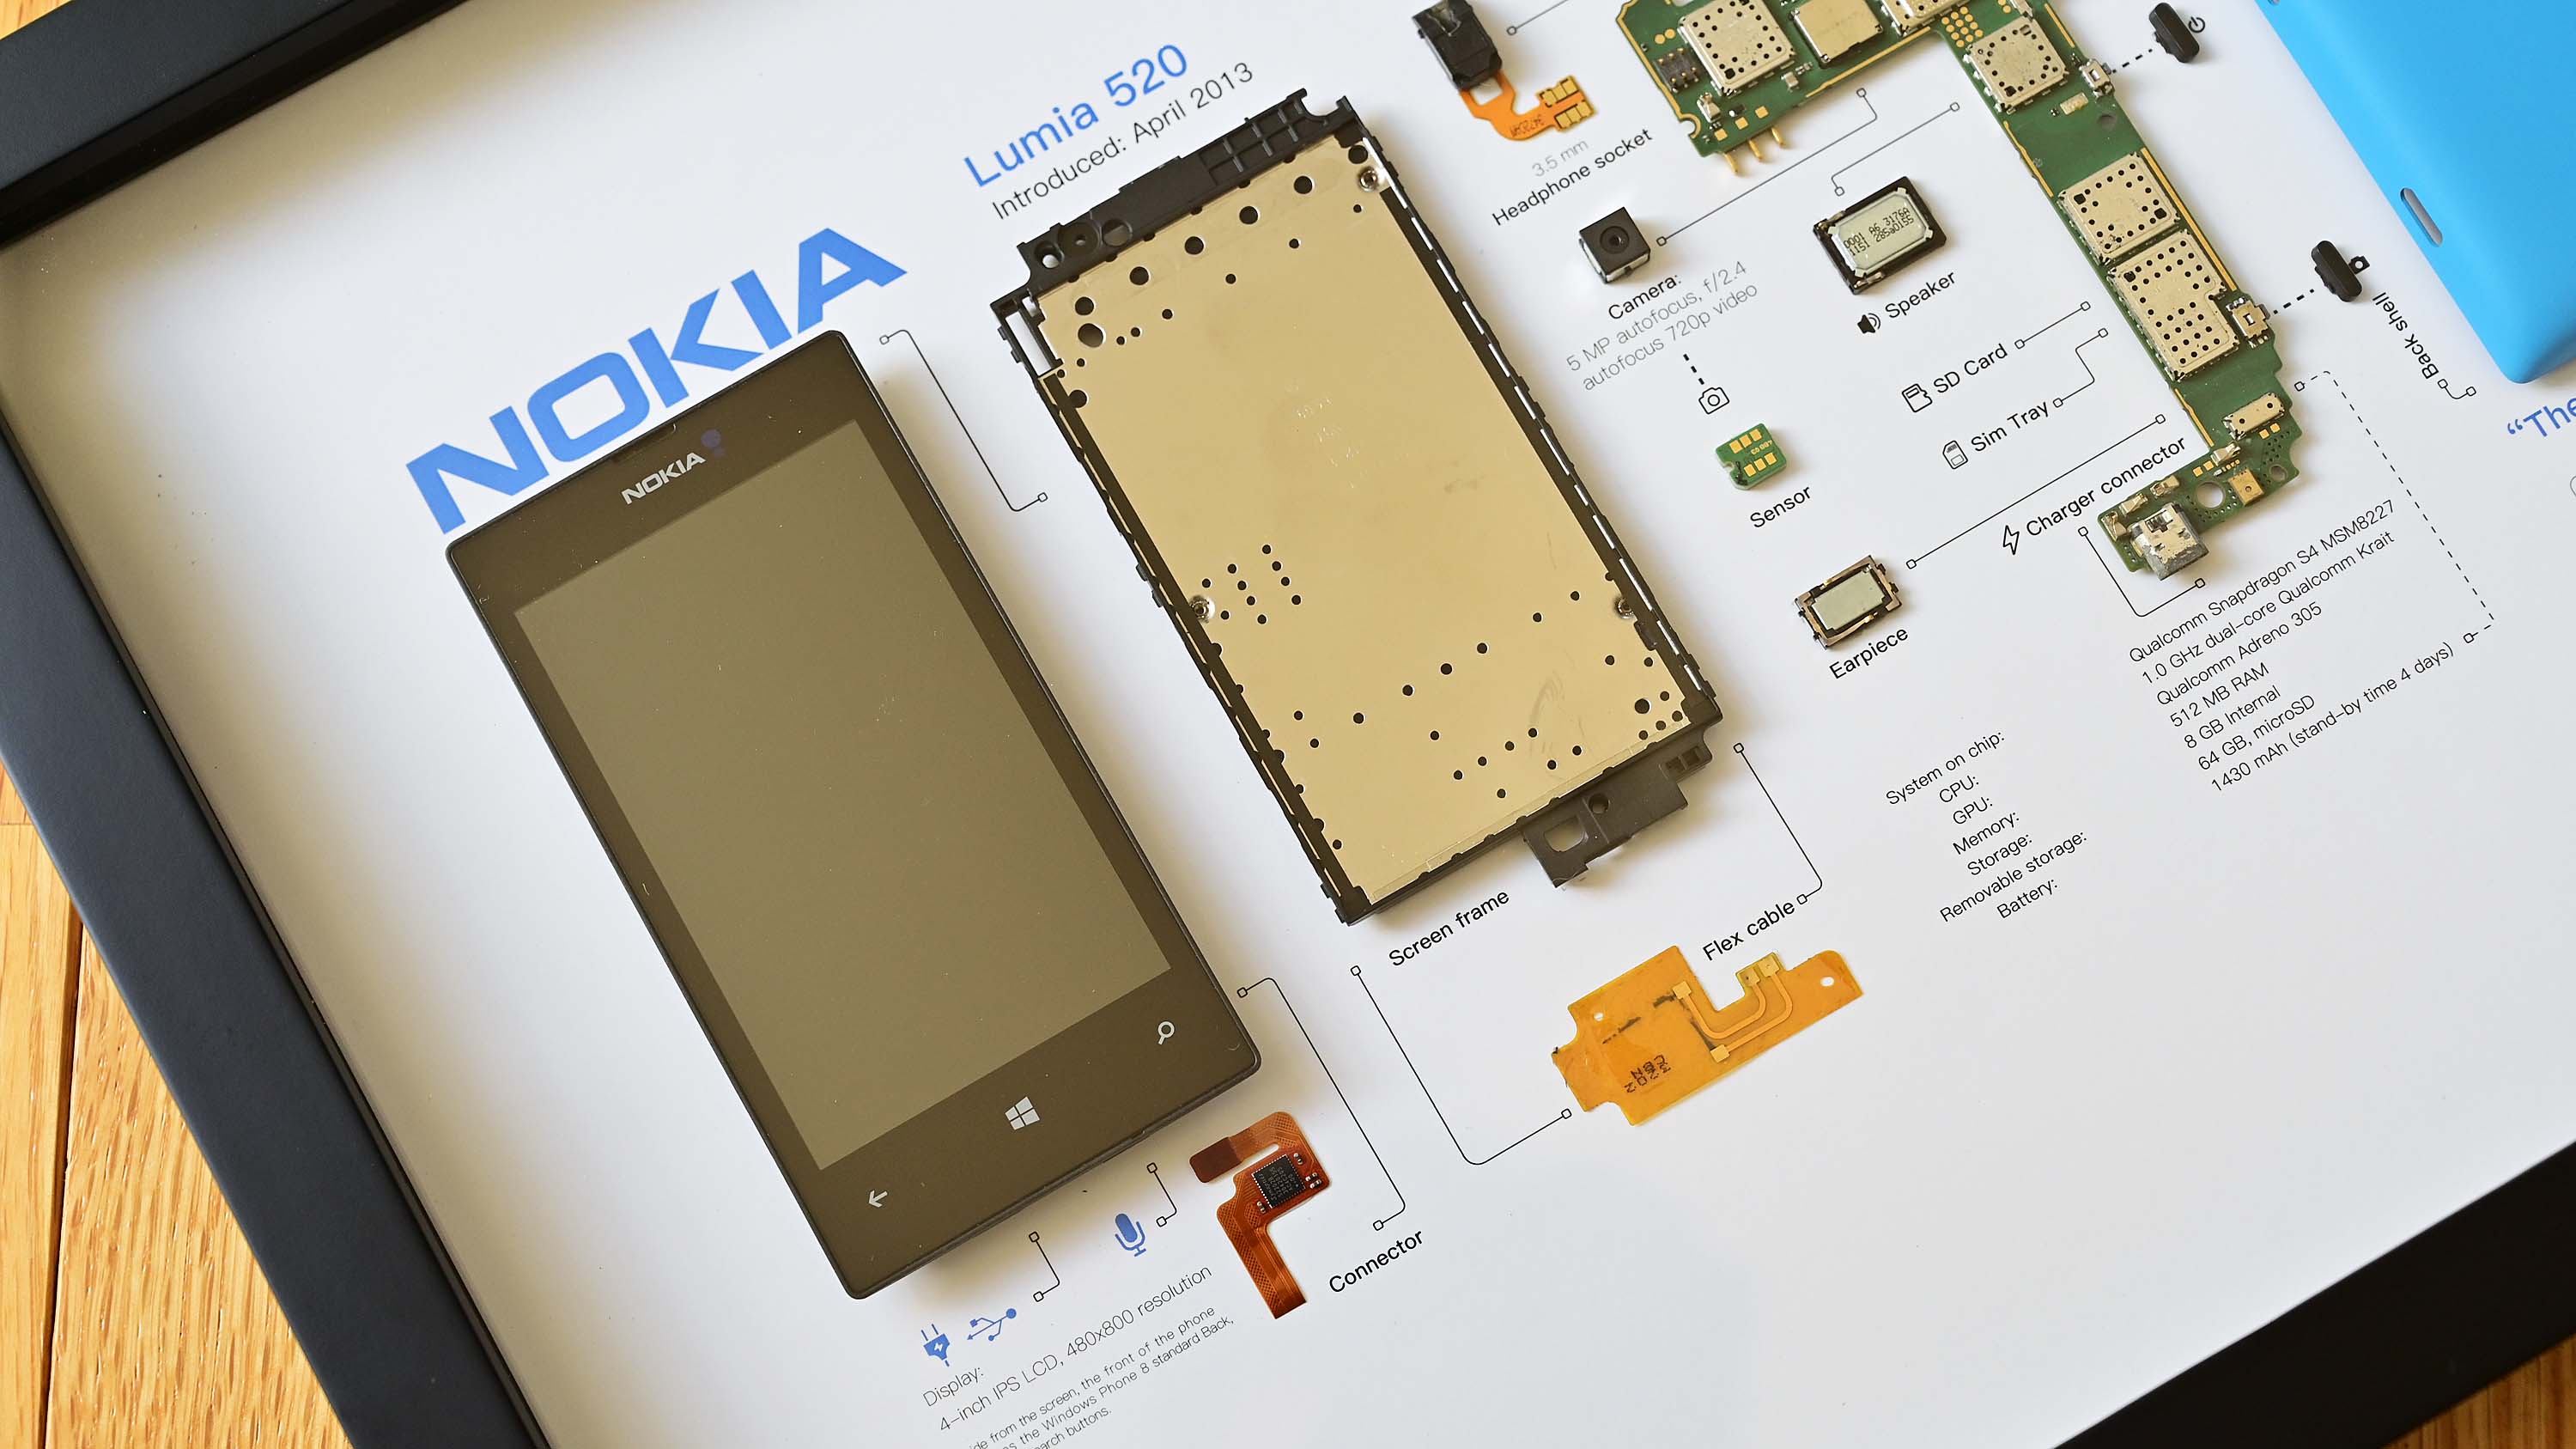 Suporte Grid Studio para Nokia Lumia 520.